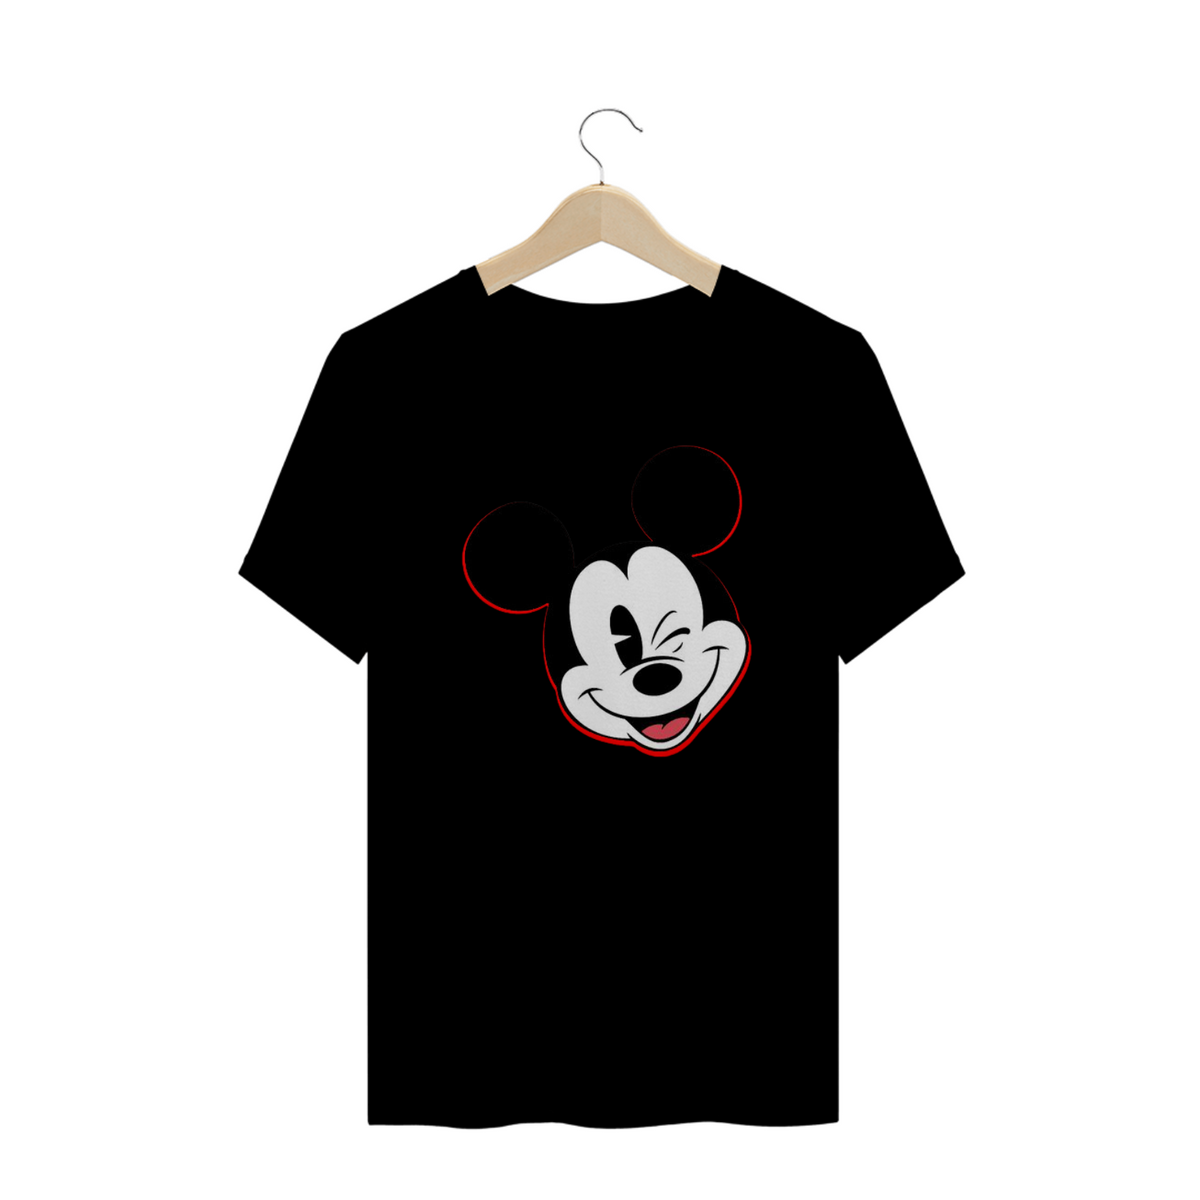 Nome do produto: Coleção A. Silva - The Mickey